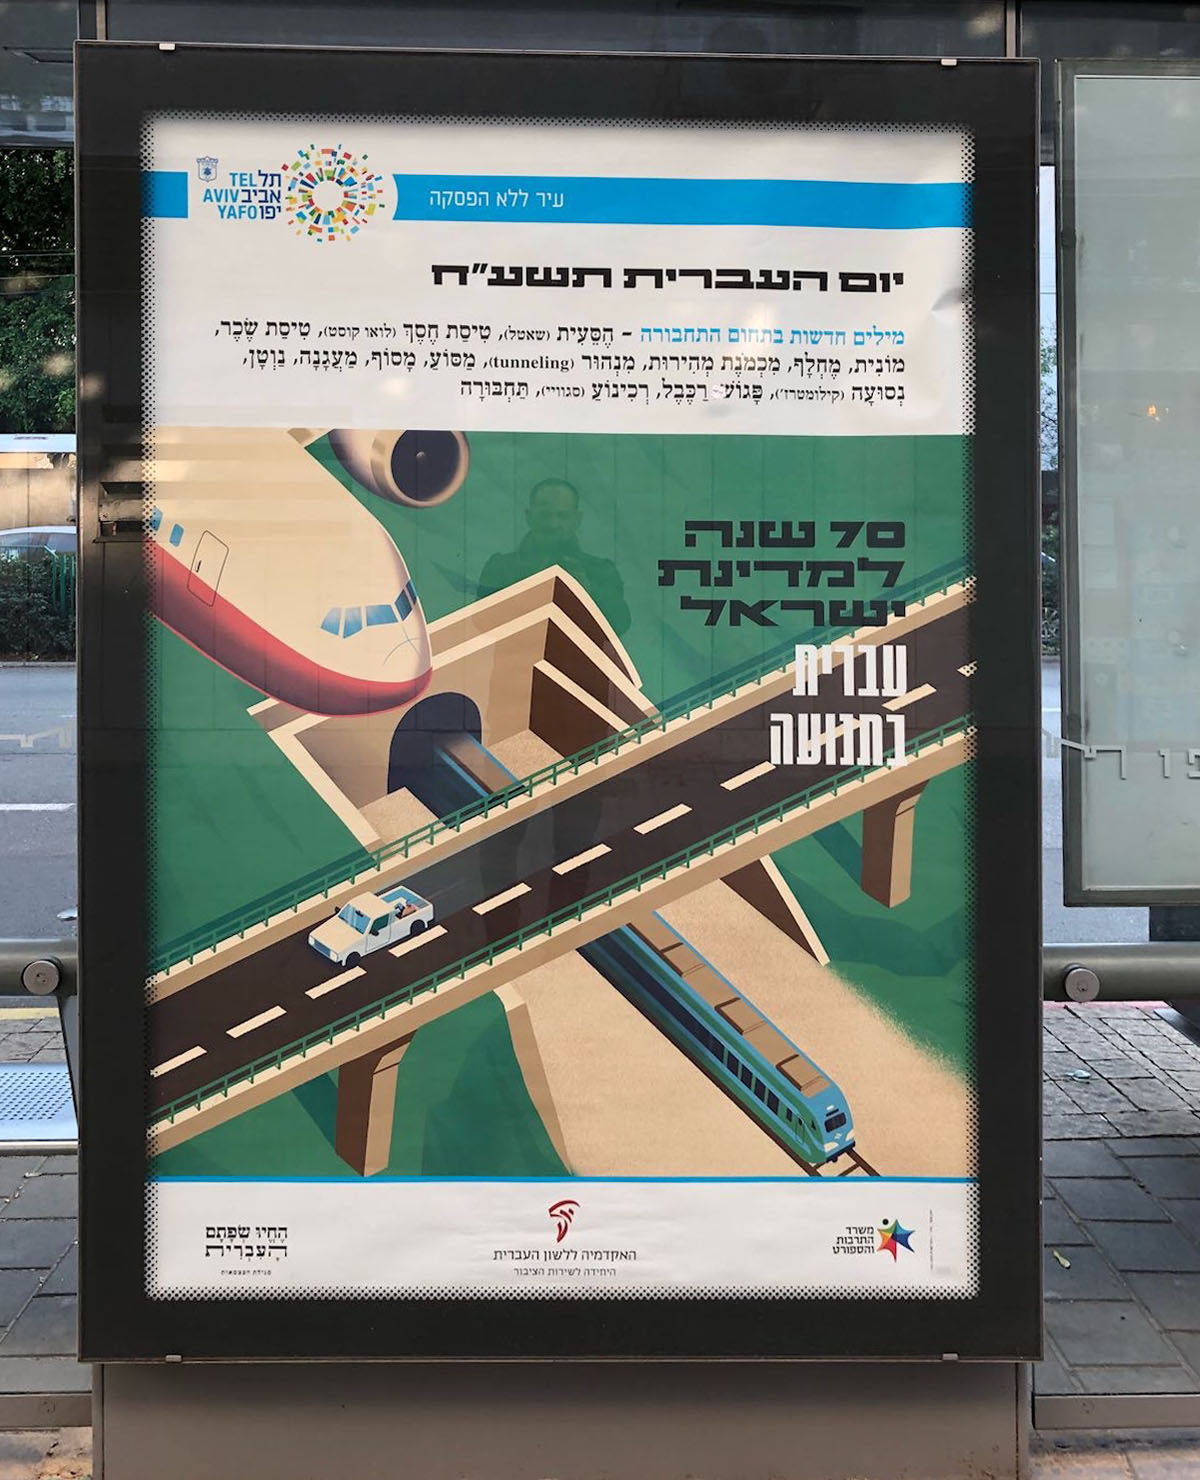 צילום כרזה ליום העברית תשע"ח איור של מטוס, רכבת ורכב על מחלף וכיתוב "עברית בתנועה"